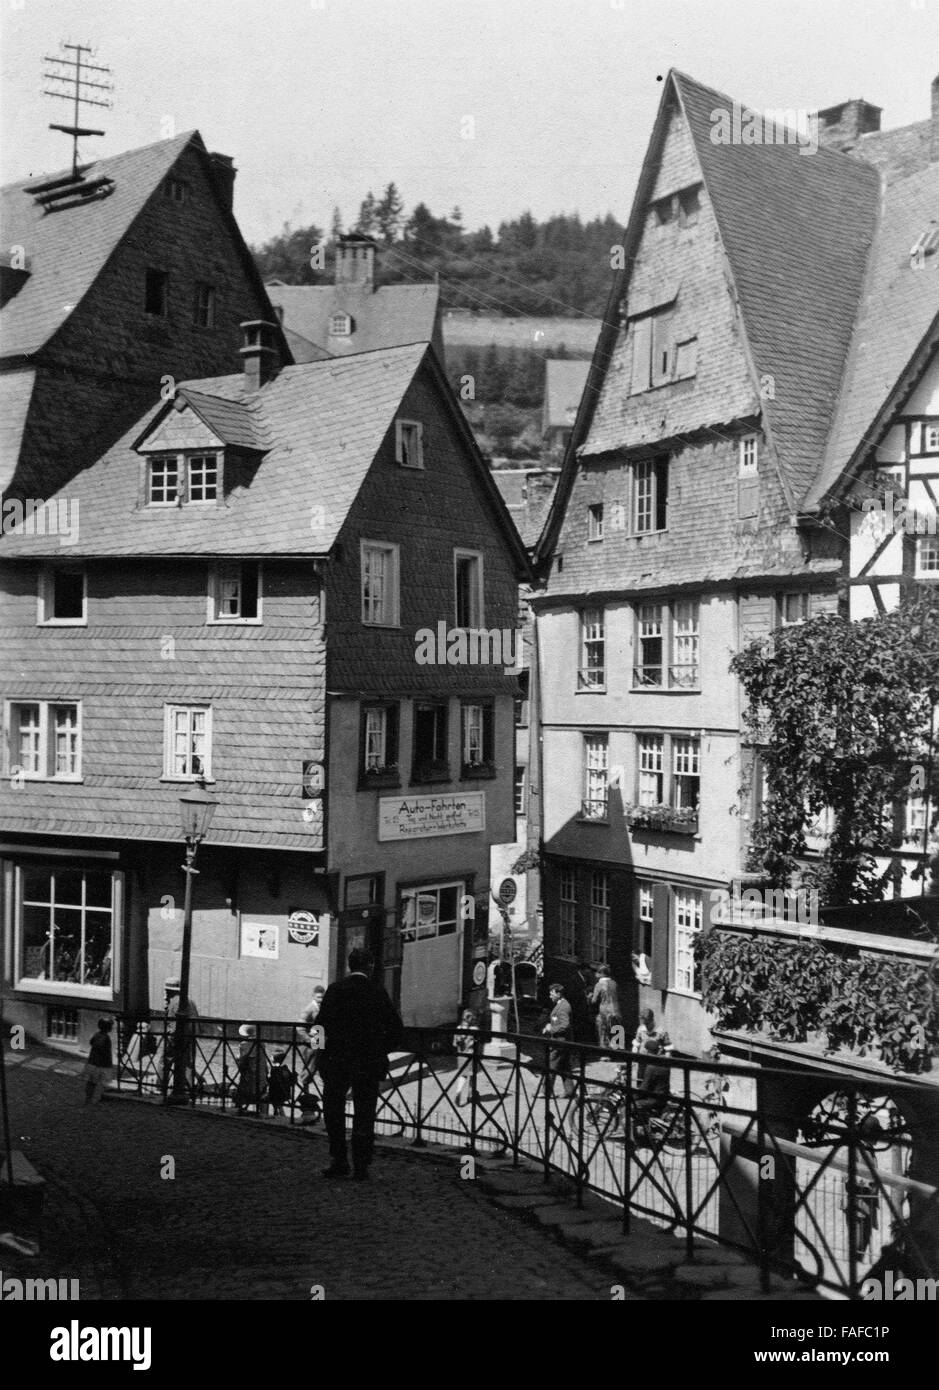 Häuser am Ufer der Rur in Monschau, Deutschland 1920er Jahre. Hhouses sulla riva del fiume Rur a Monschau, Germania 1920s. Foto Stock